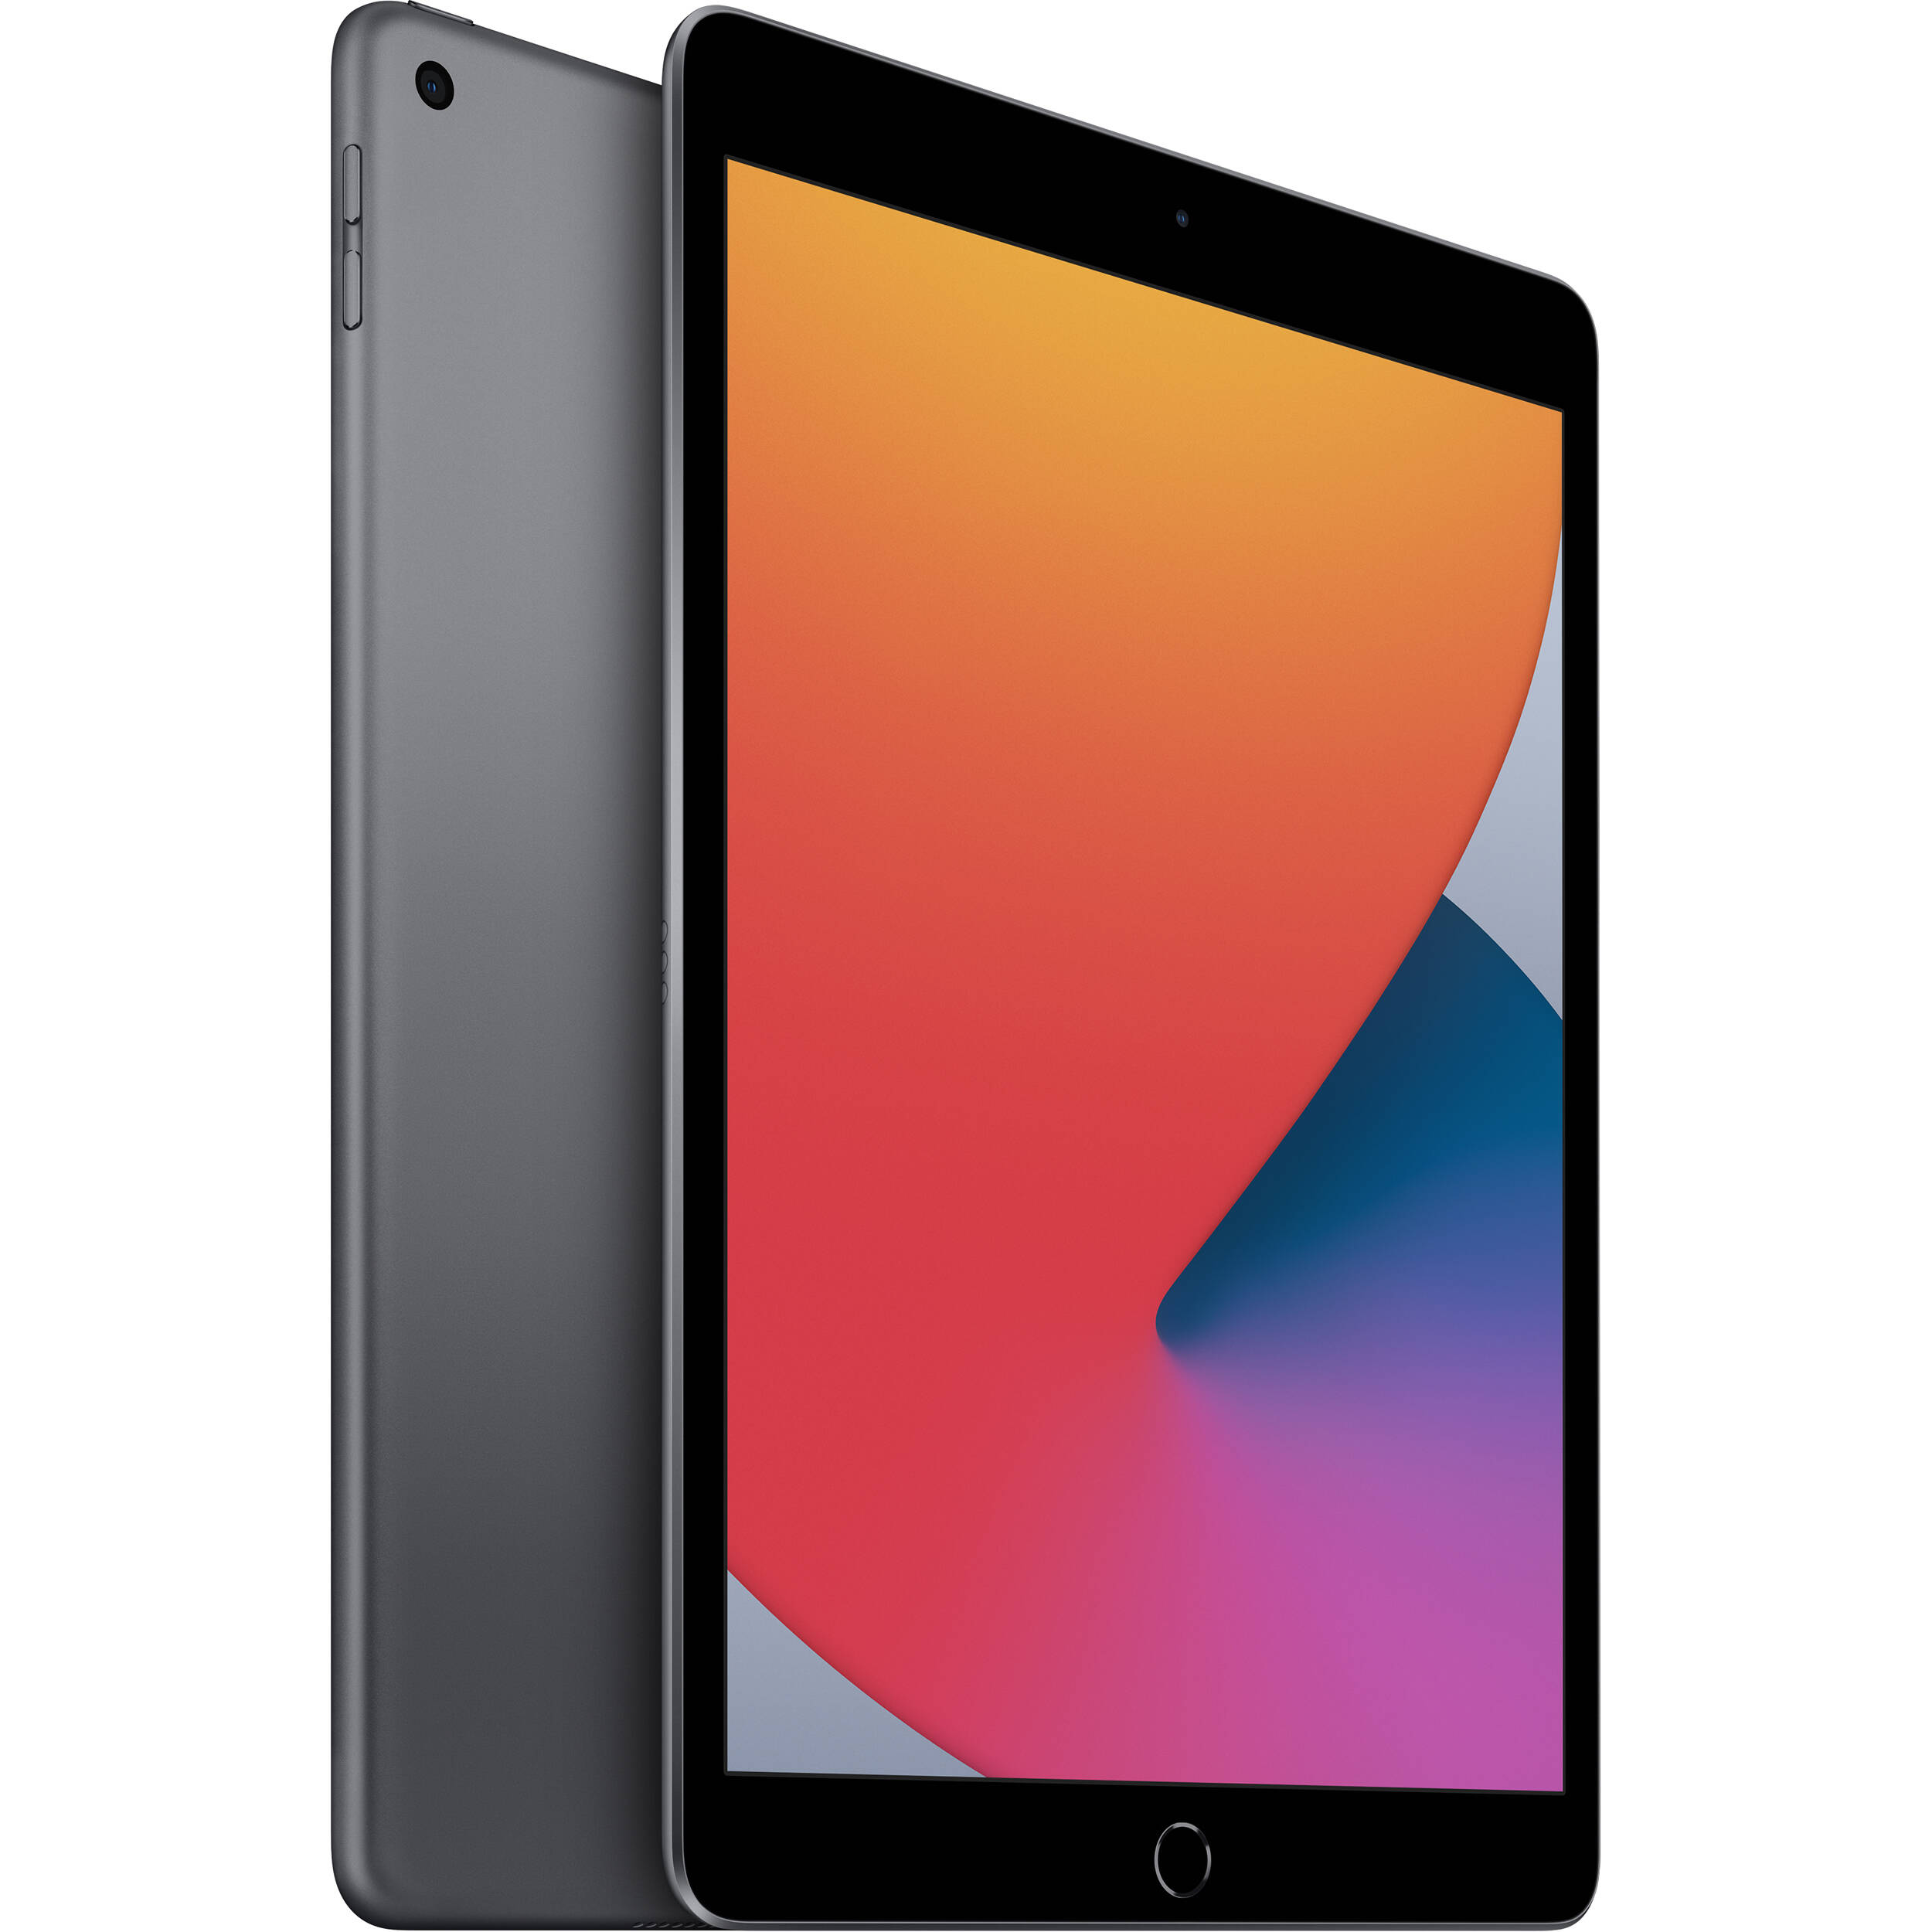 تبلت اپل مدل iPad 10.2 inch 2020 WiFi ظرفیت 128 گیگابایت  main 1 1